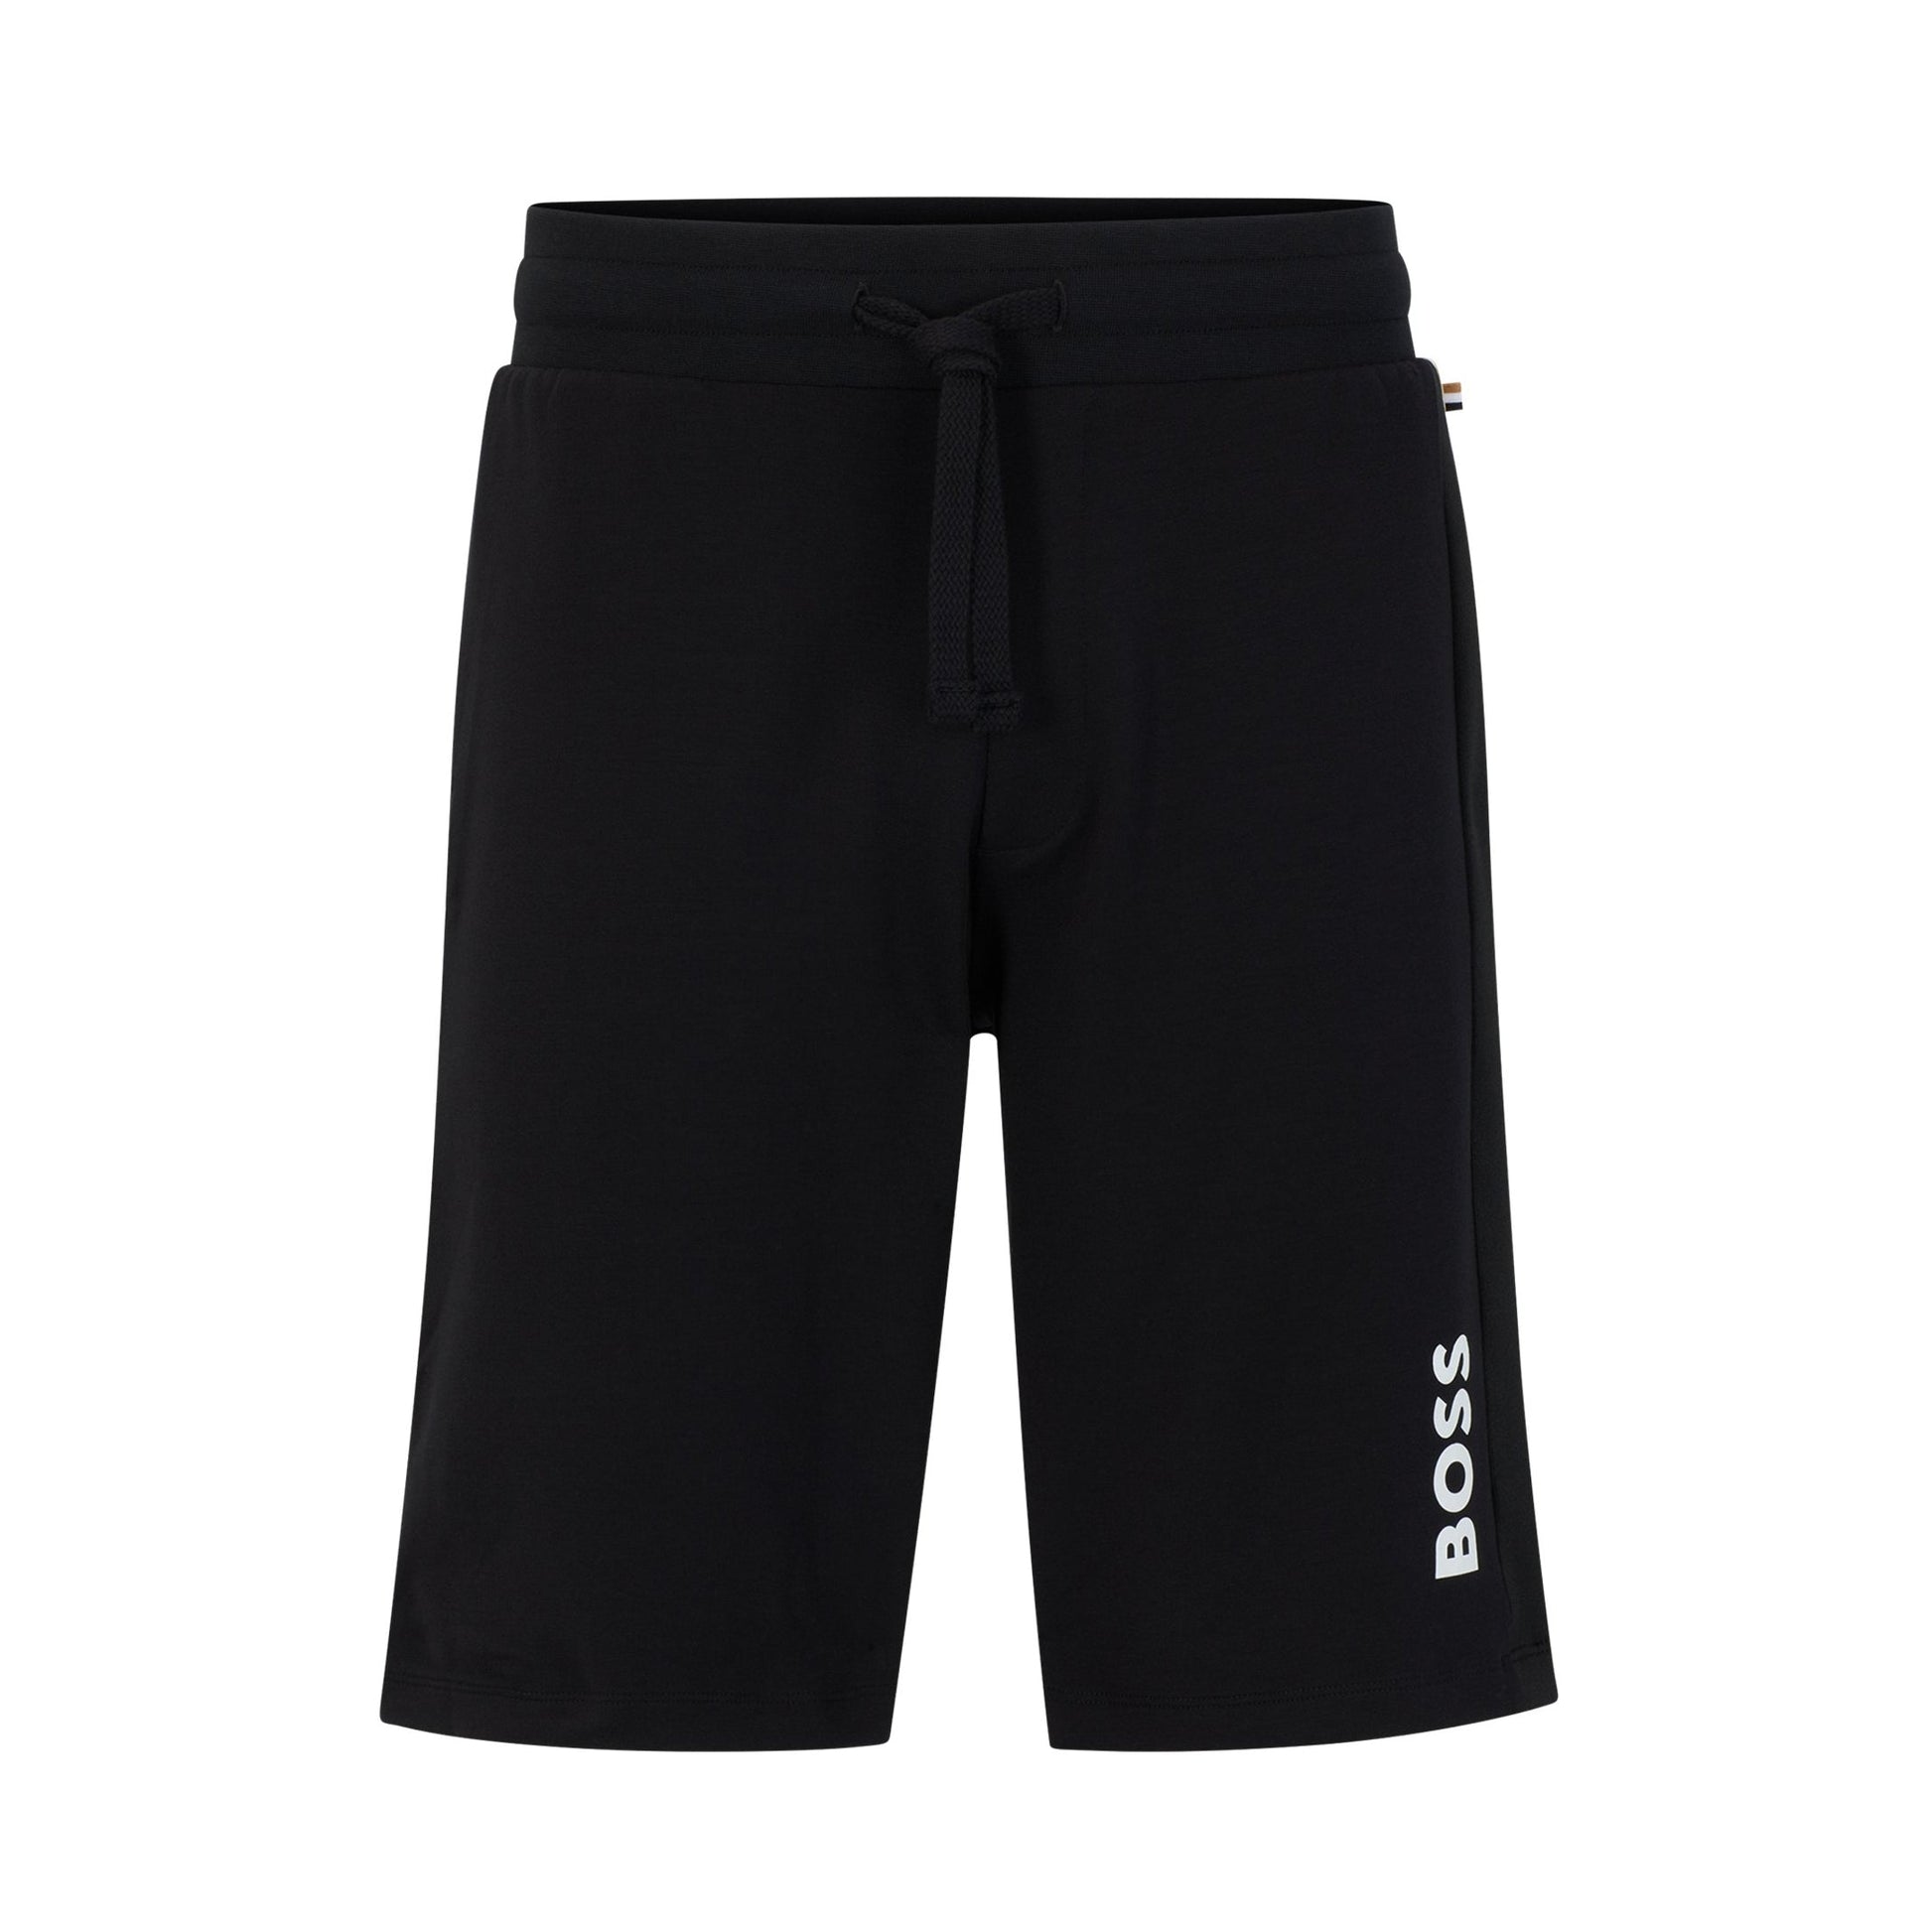 BOSS Black Signature Strip Shorts - 001 Black - Escape Menswear